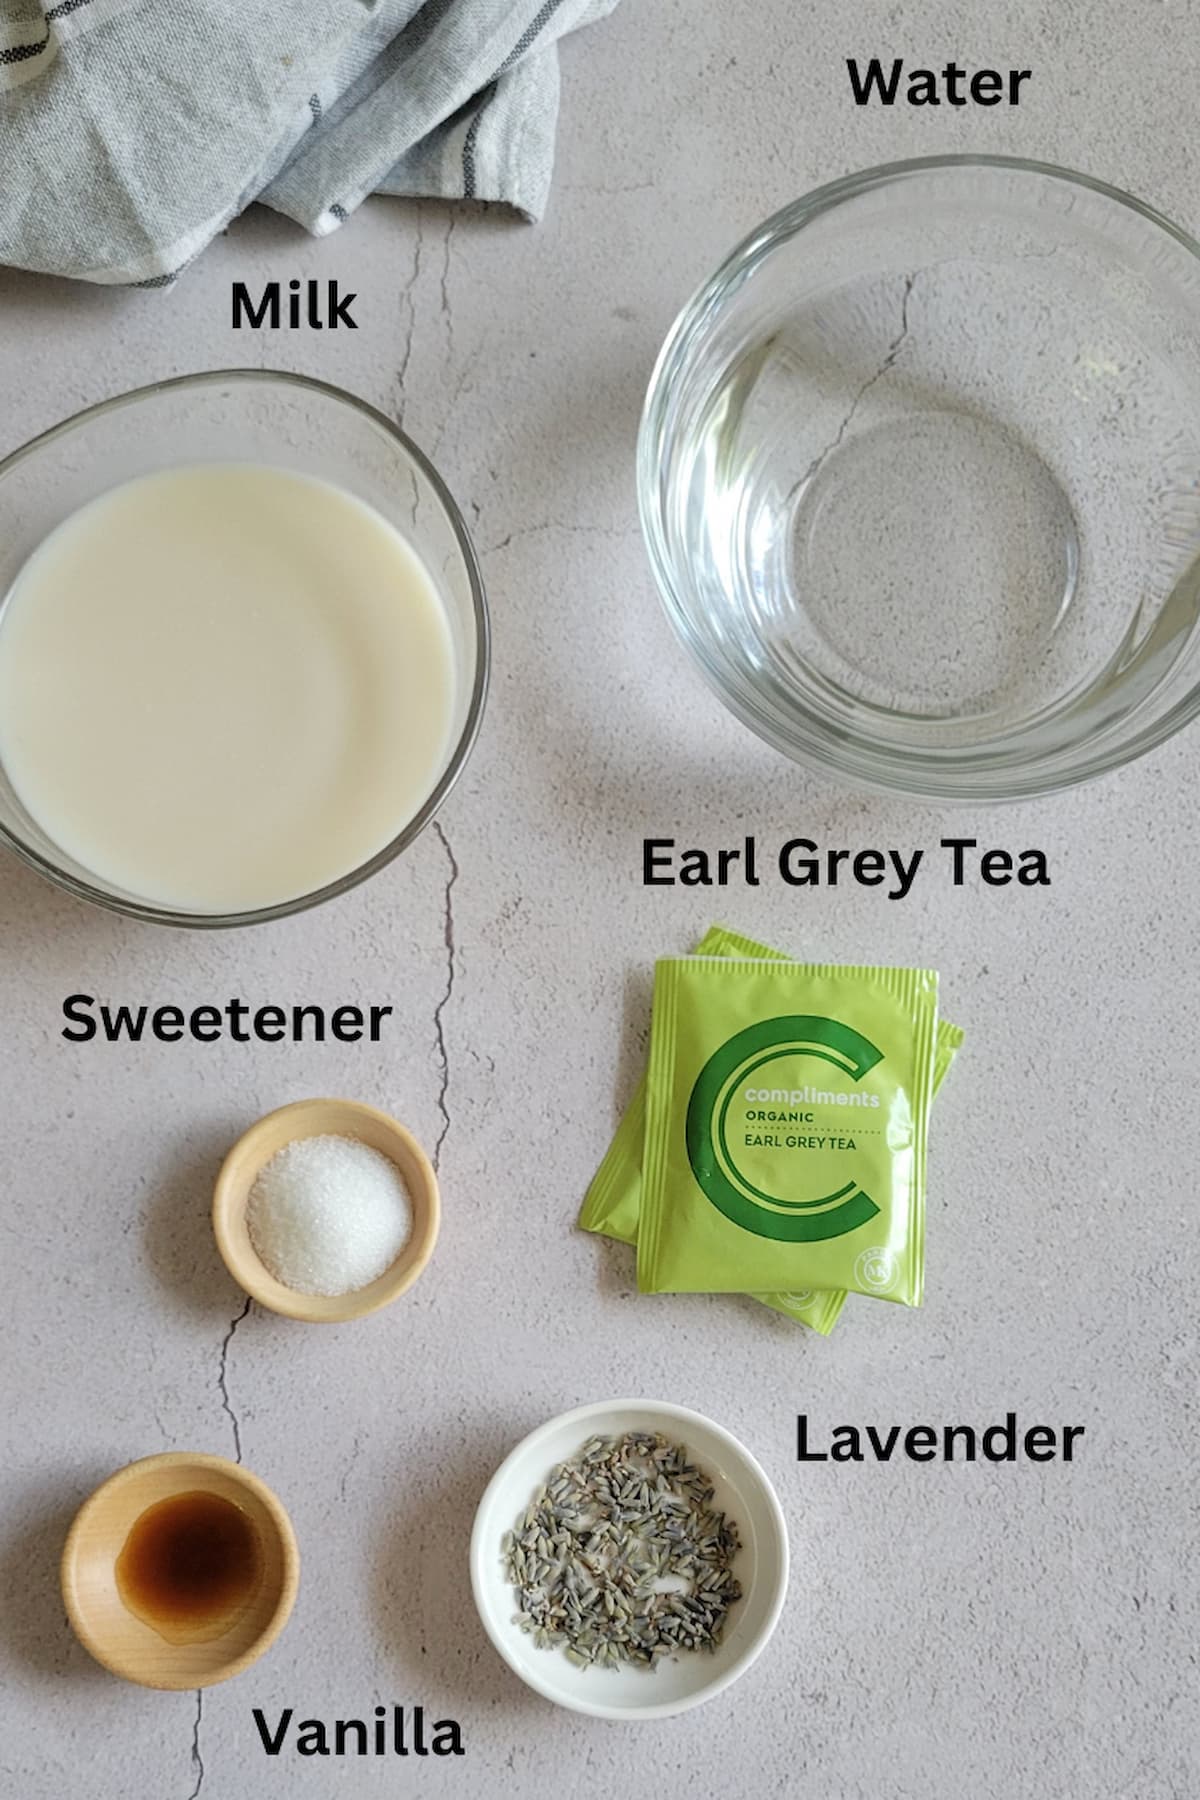 ingredients for london fog from starbucks - earl grey tea, water, milk, vanilla, sweetener, lavender